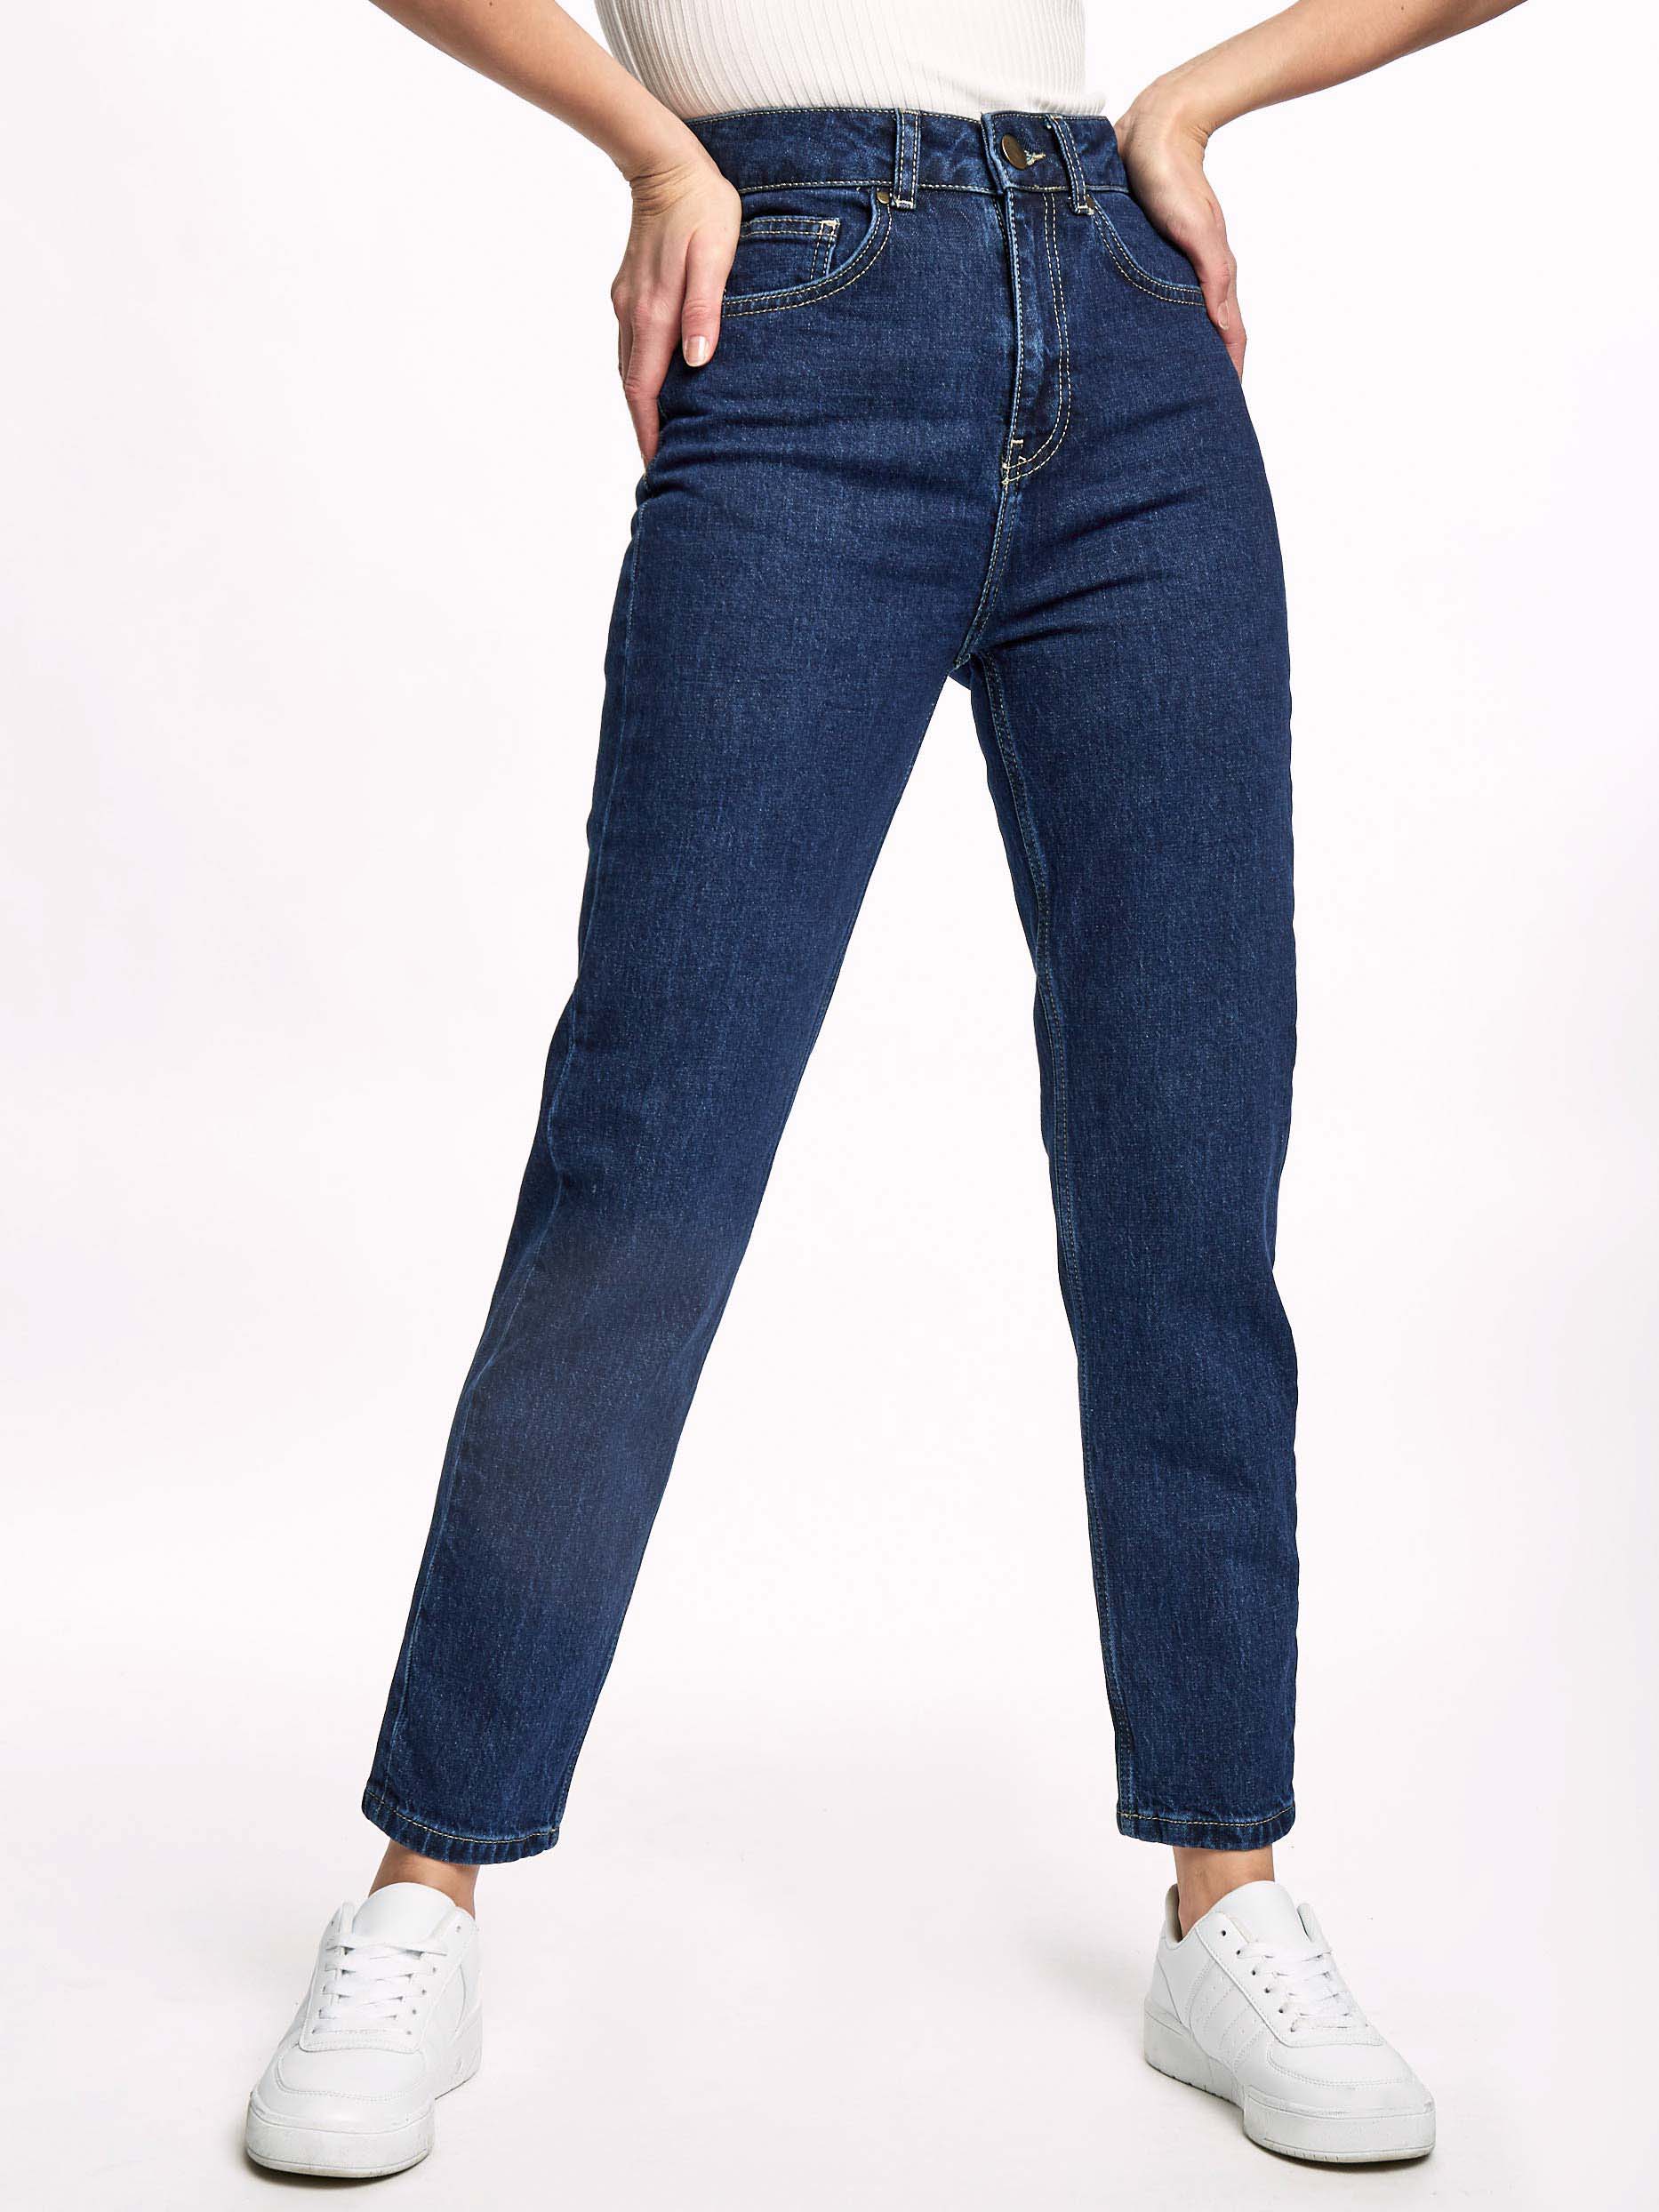 Женские укороченные джинсы тёмно-синие CA-1-36705_50031-140 от byME 